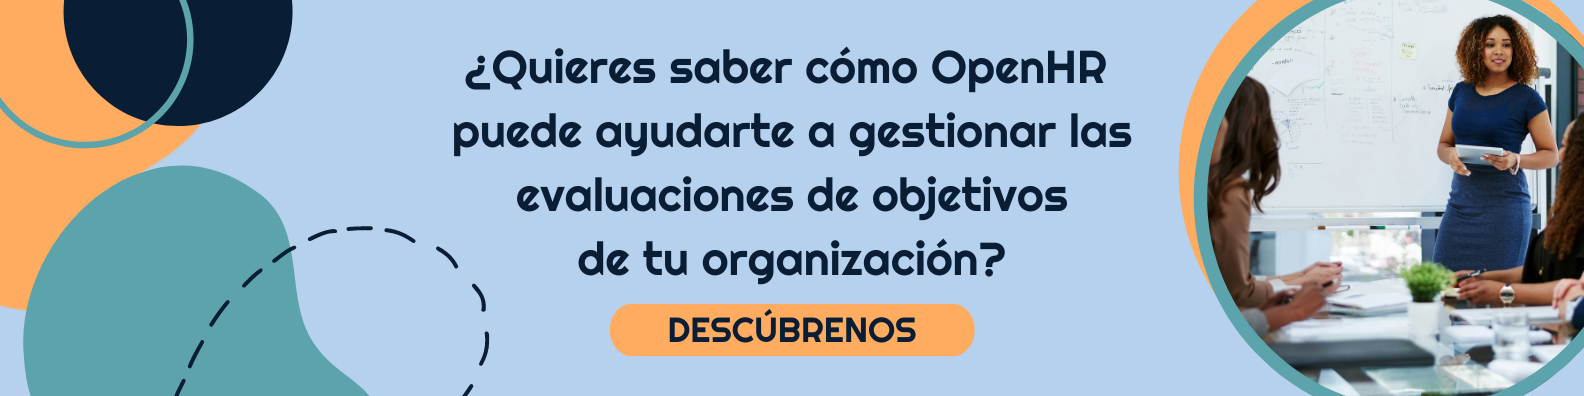 ¿Quieres saber cómo OpenHR puede ayudarte a gestionar las evaluaciones de objetivos de tu organización